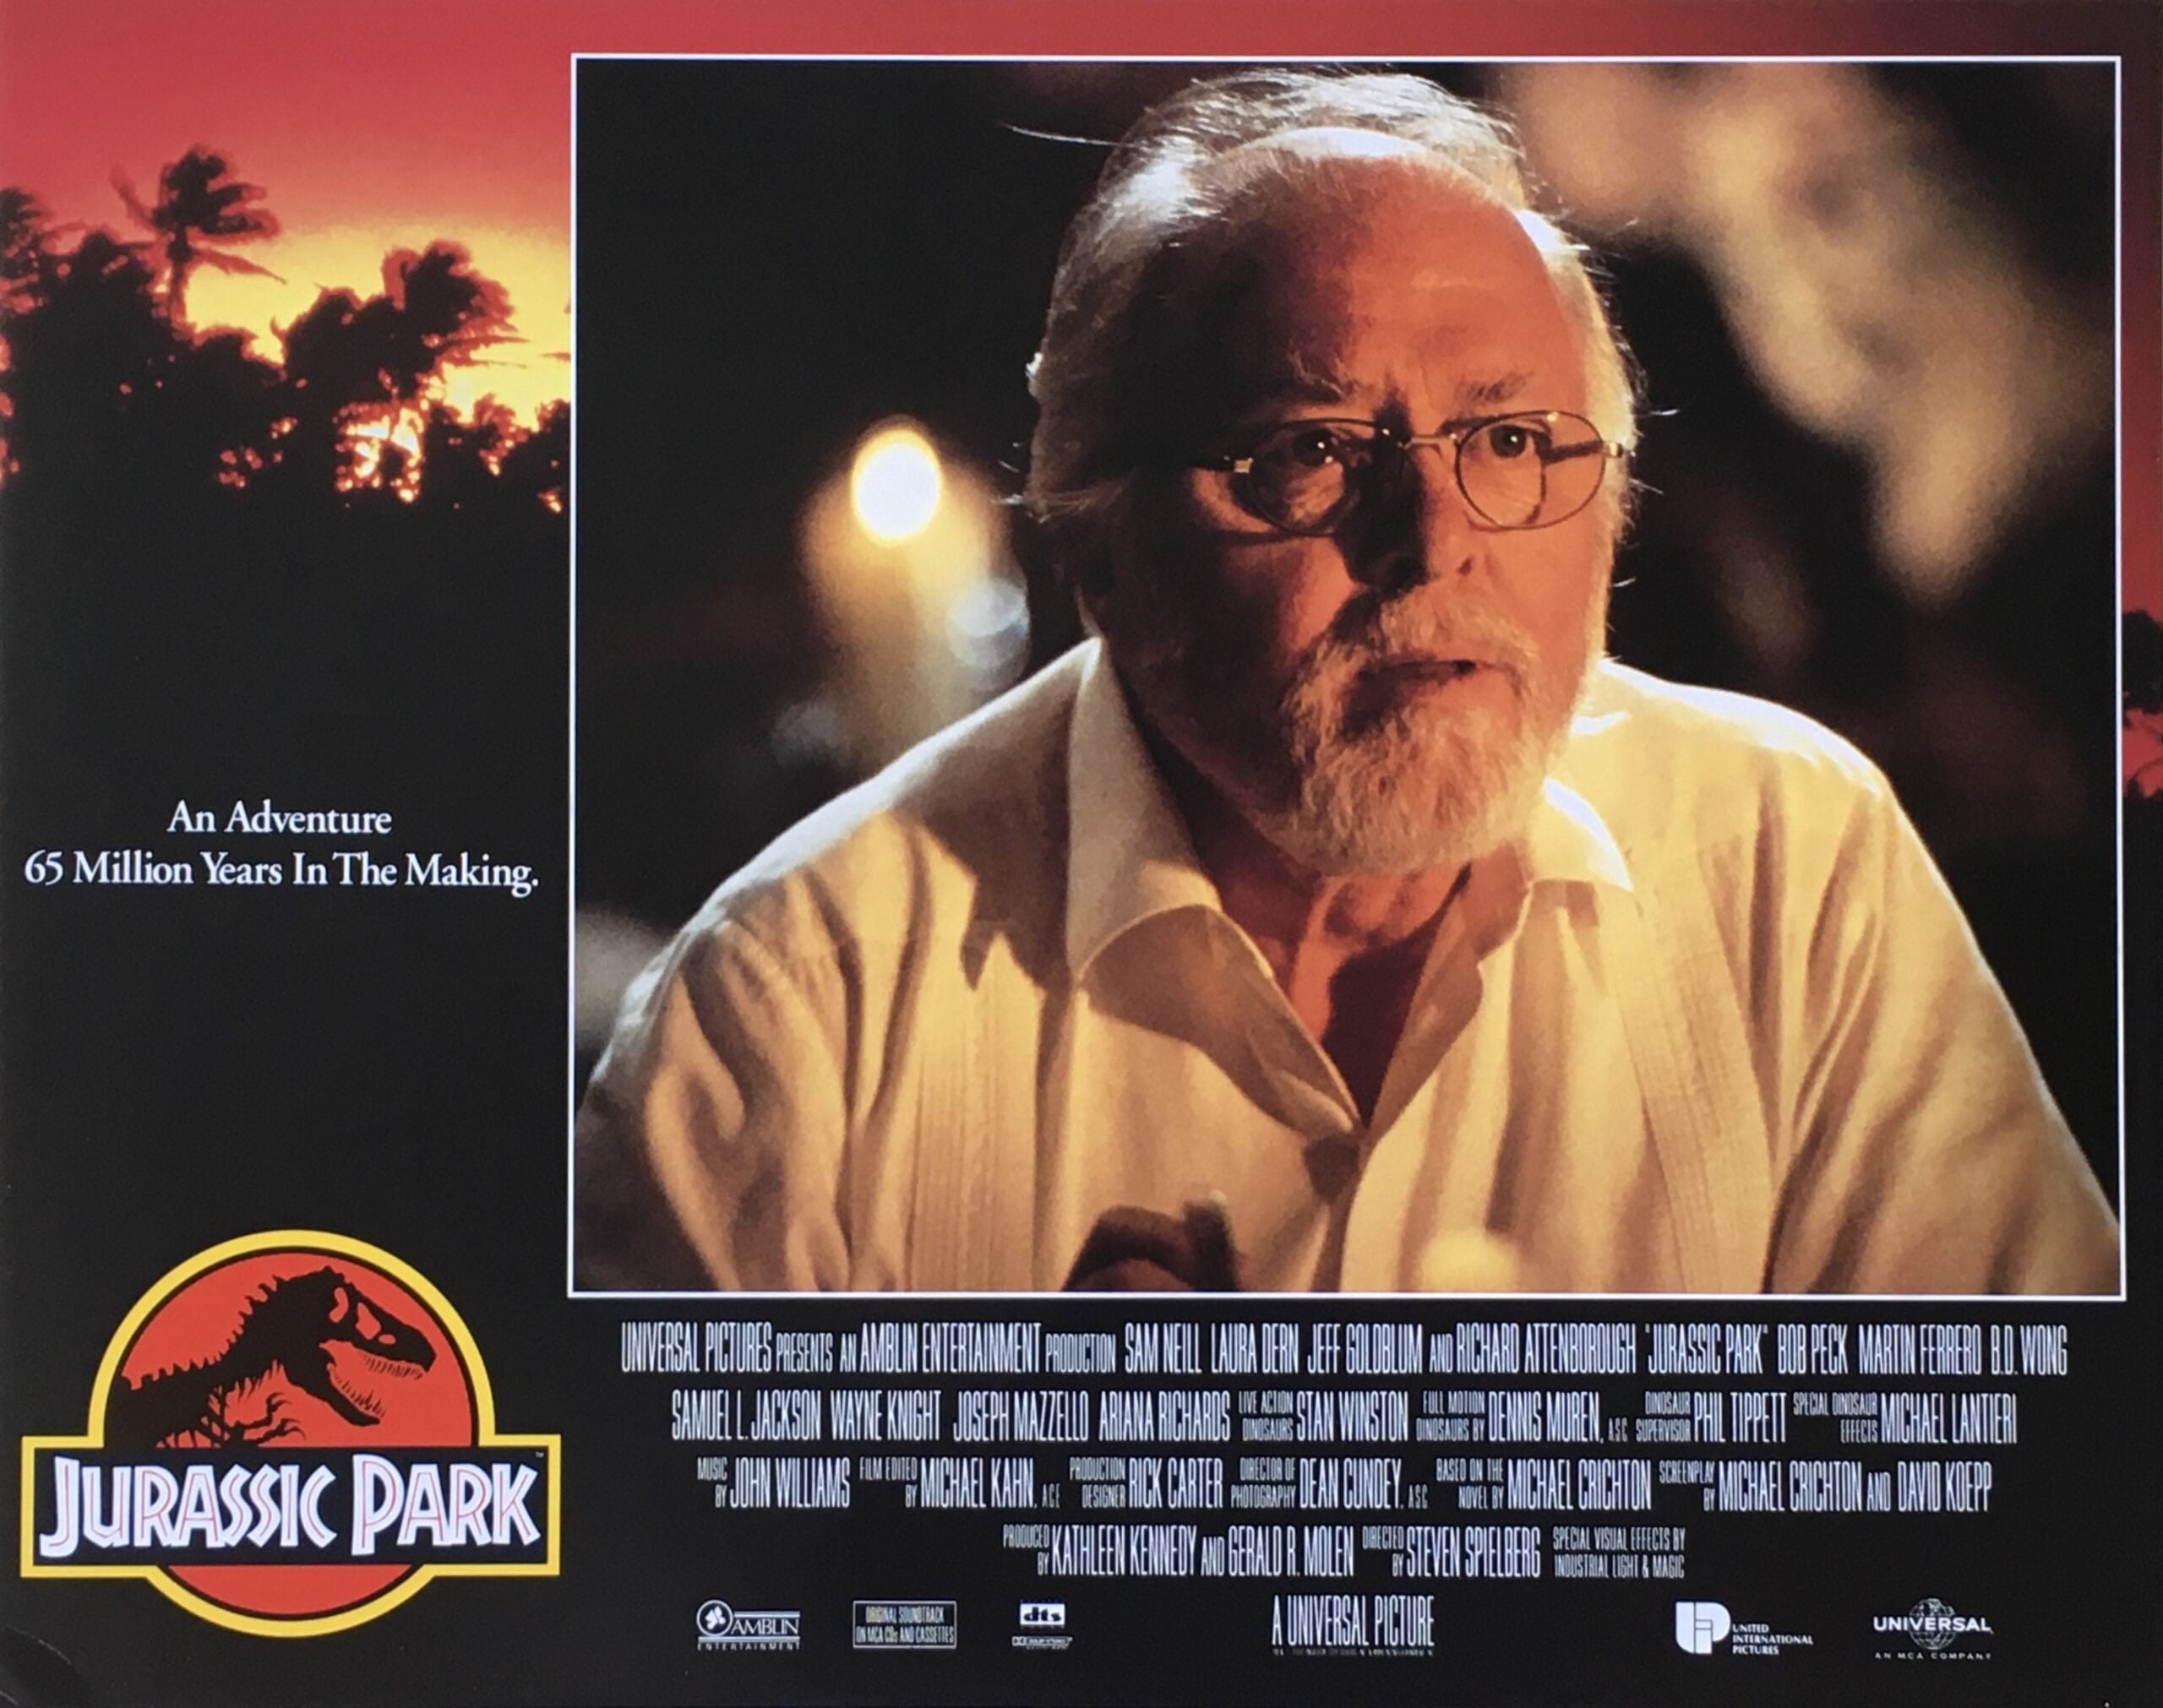 Priginal vinrage cinema lobby card movie poster for Jurassic Park